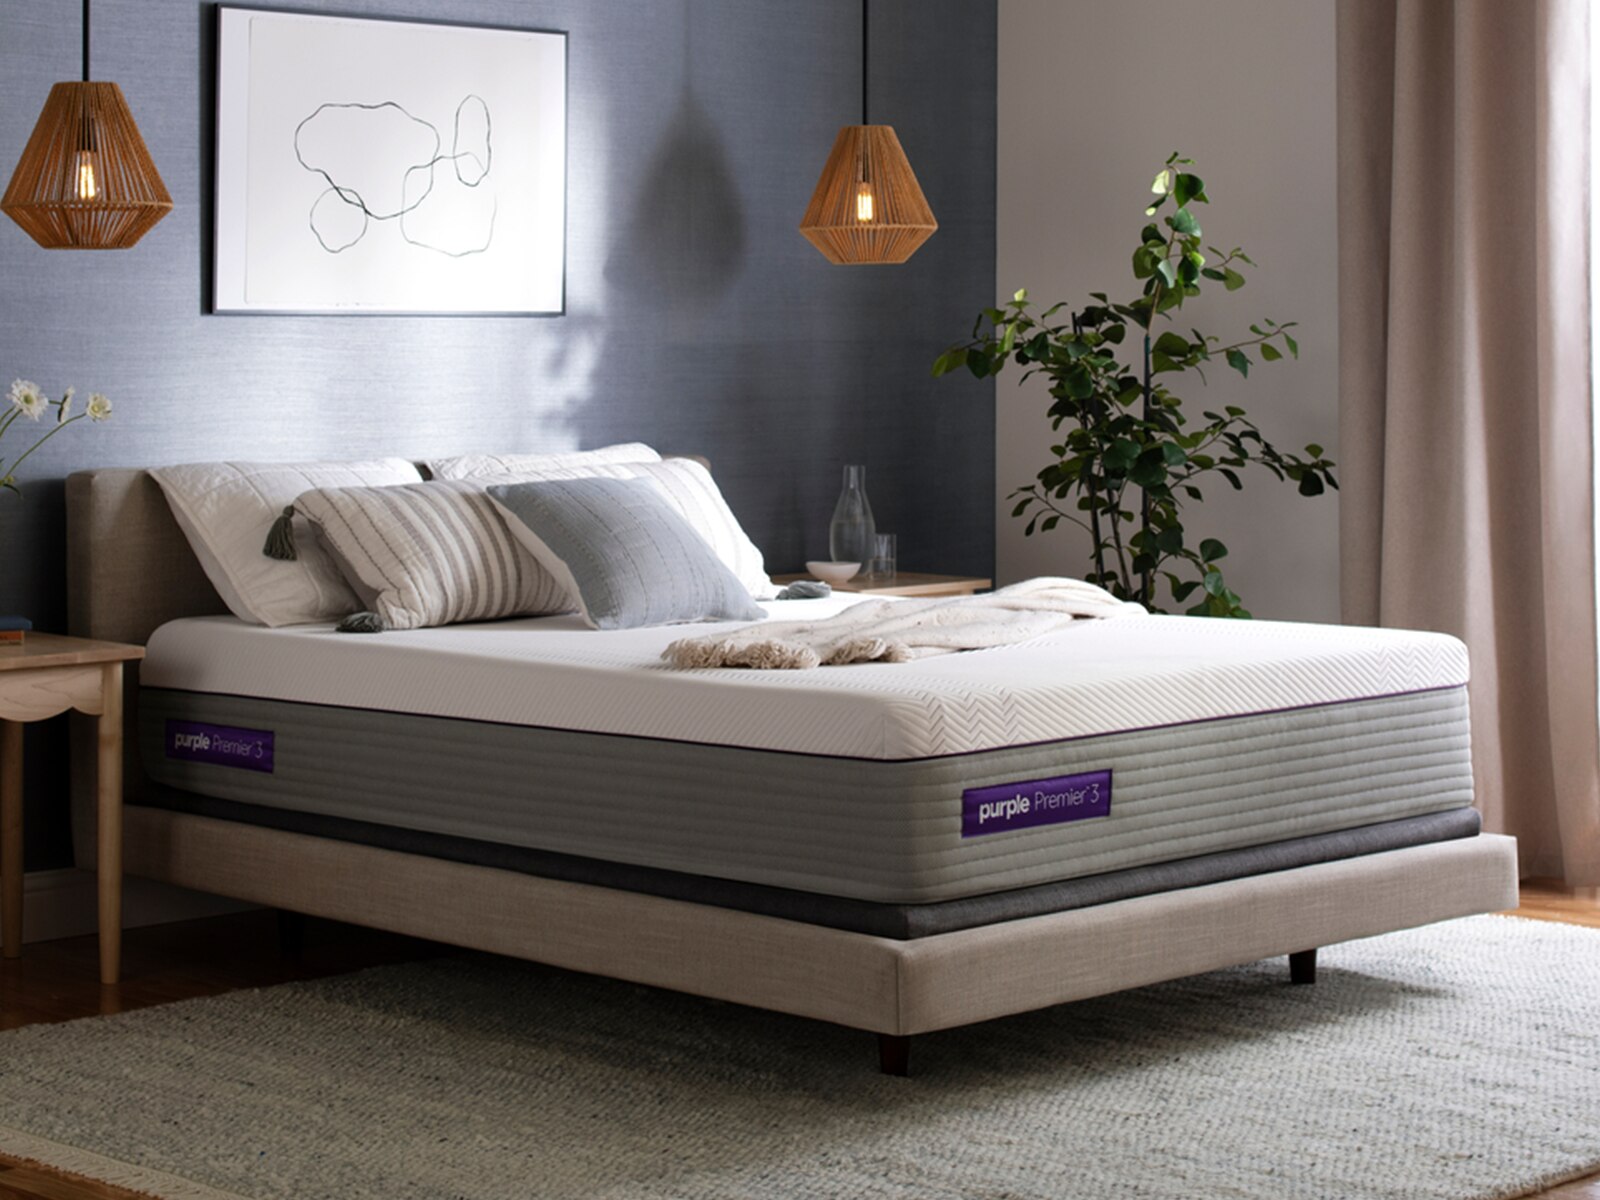 moving a purple 3 mattress